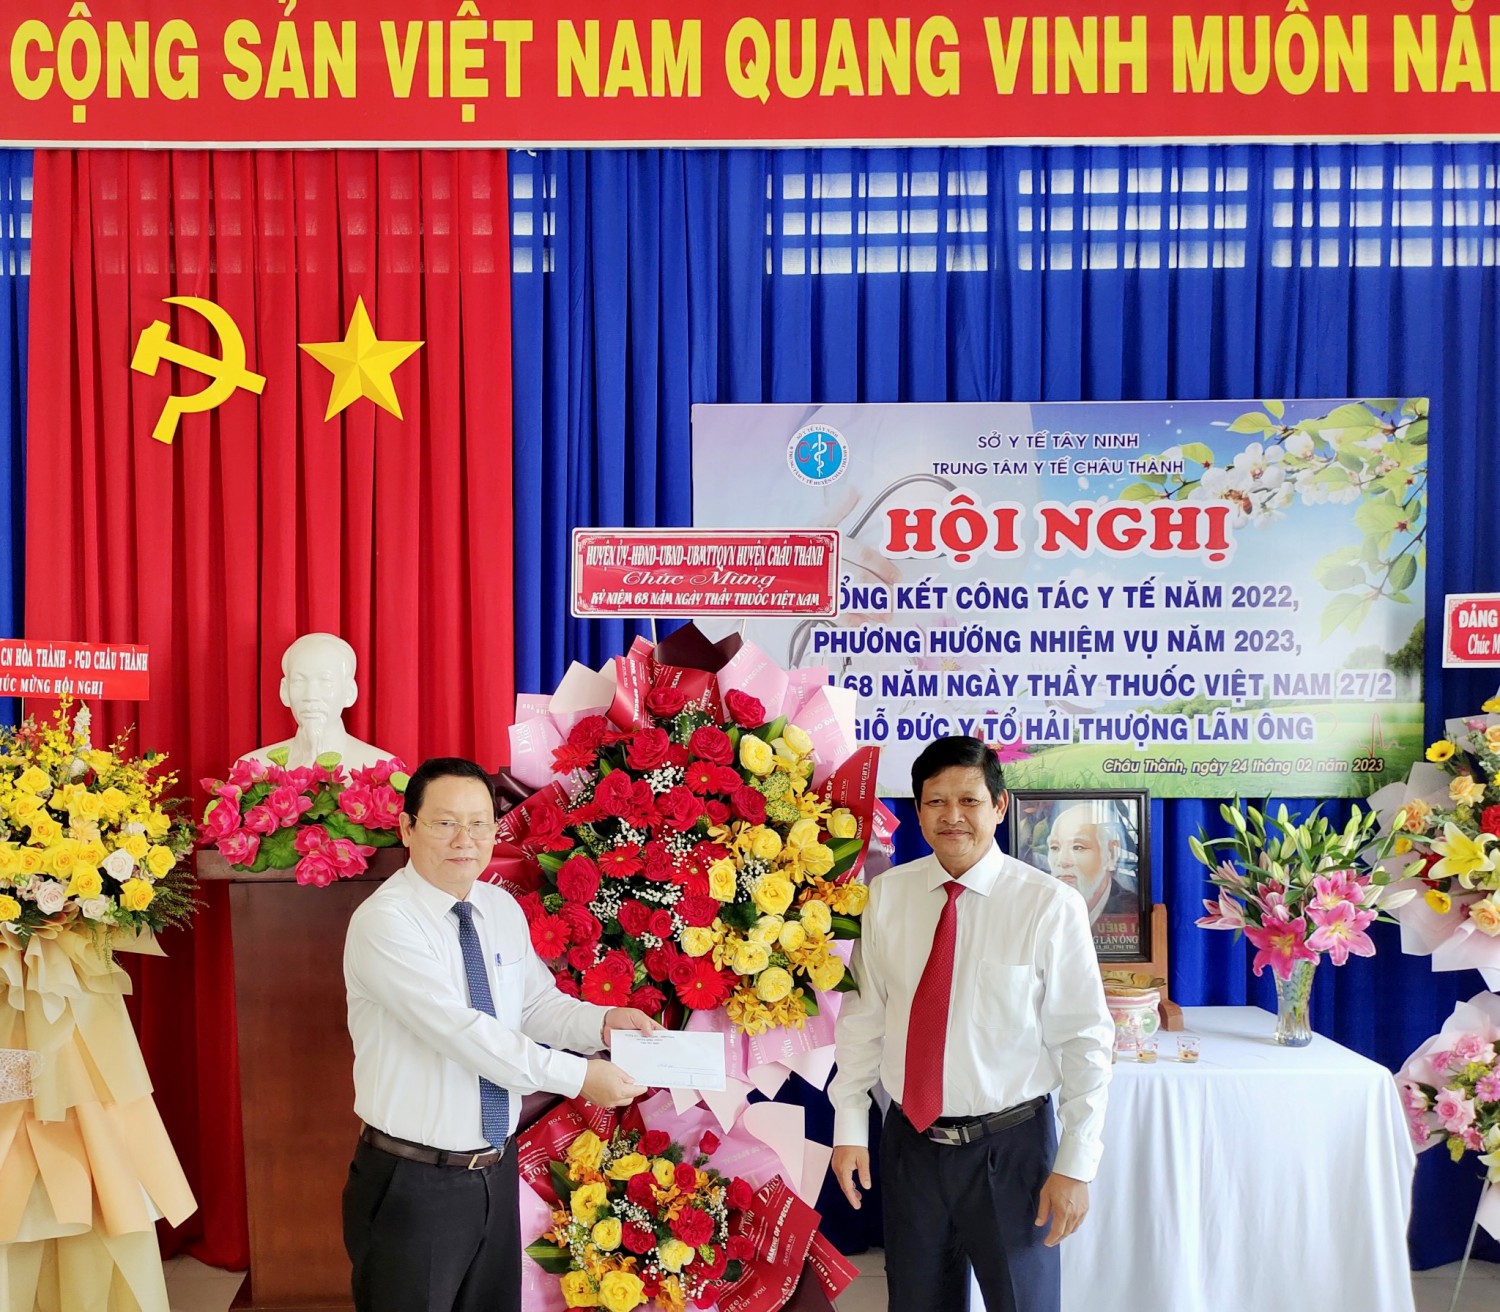 ông Nguyễn Thành Tiễn, Bí thư Huyện uỷ đã trao tặng lẵng hoa cho lãnh đạo